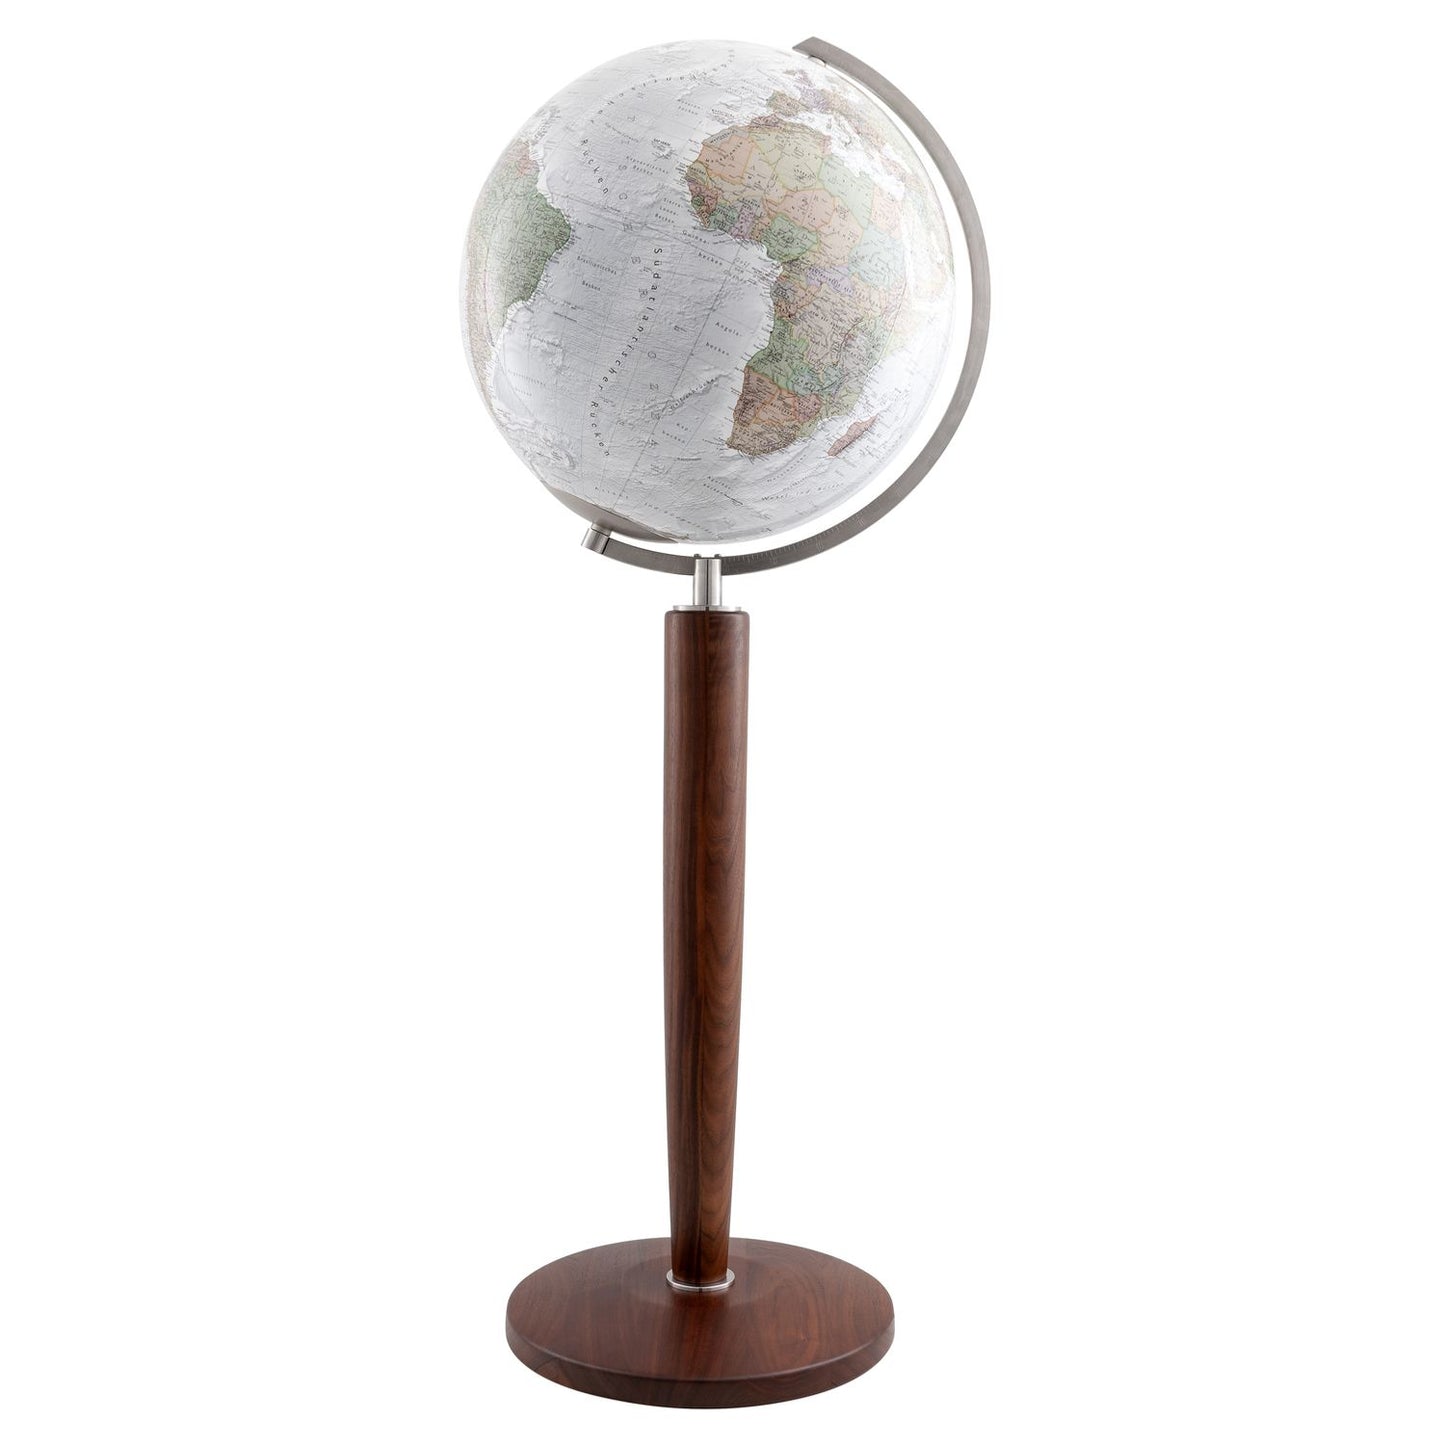 Columbus DUO ALBA globe sur pied Khan D 51 cm verre cristal et socle noyer